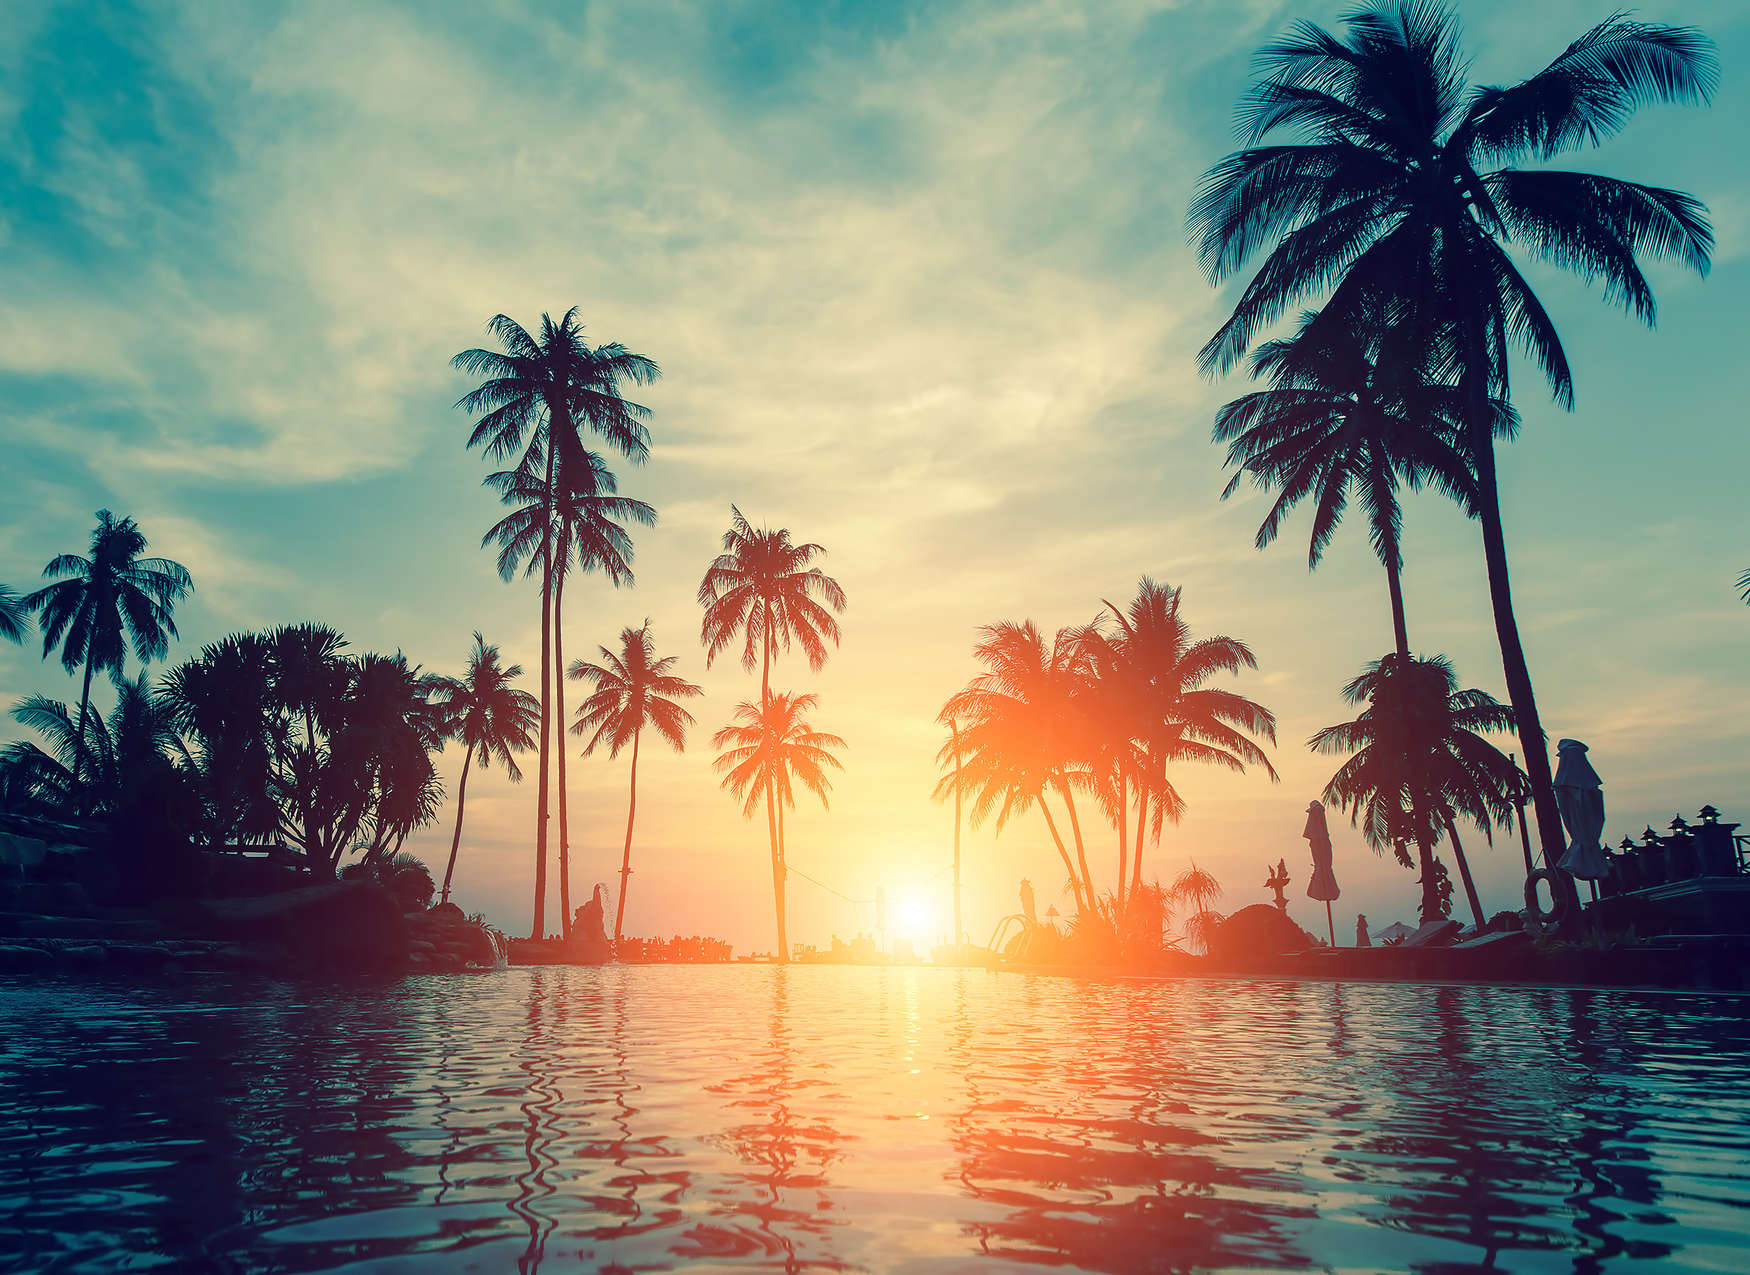             Fototapete mit Palmen am Wasser im Sonnenuntergang – Blau, Orange, Schwarz
        